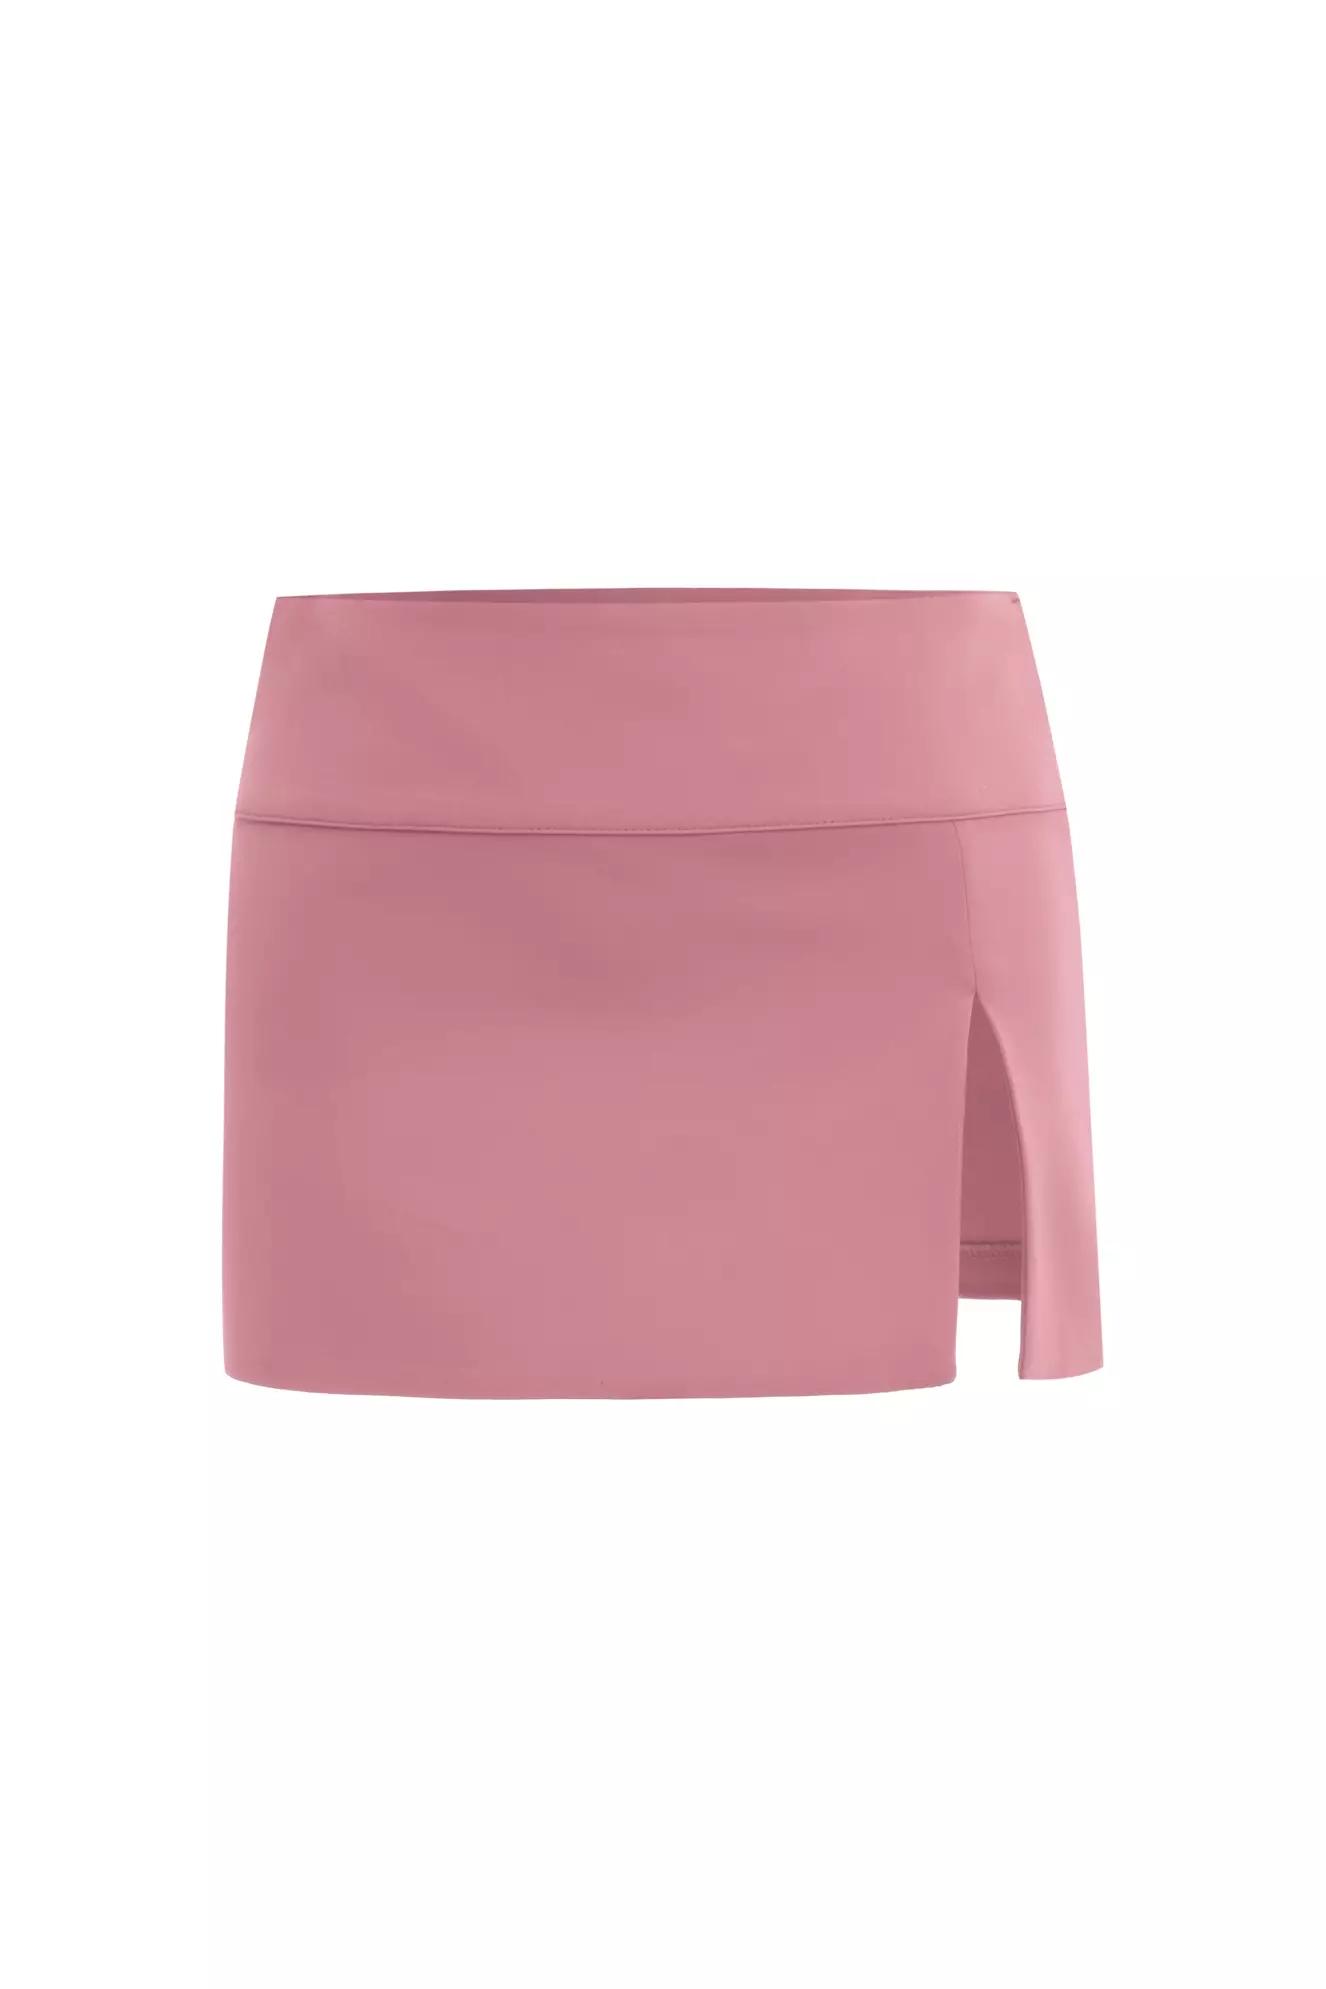 Blush crepe mini skirt